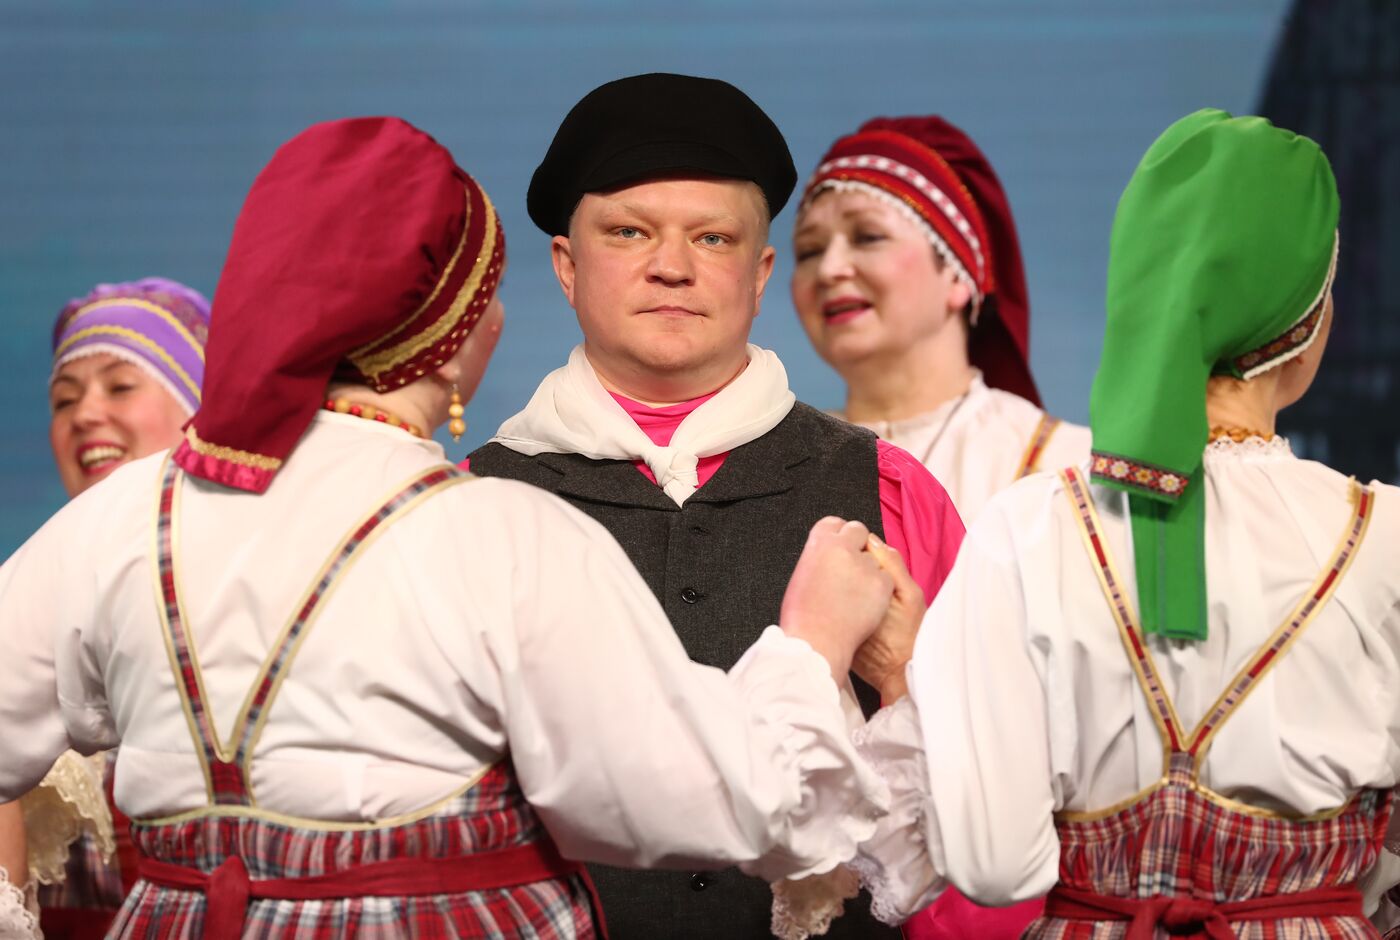 Выставка "Россия". Свадебная церемония в традициях Республики Карелия